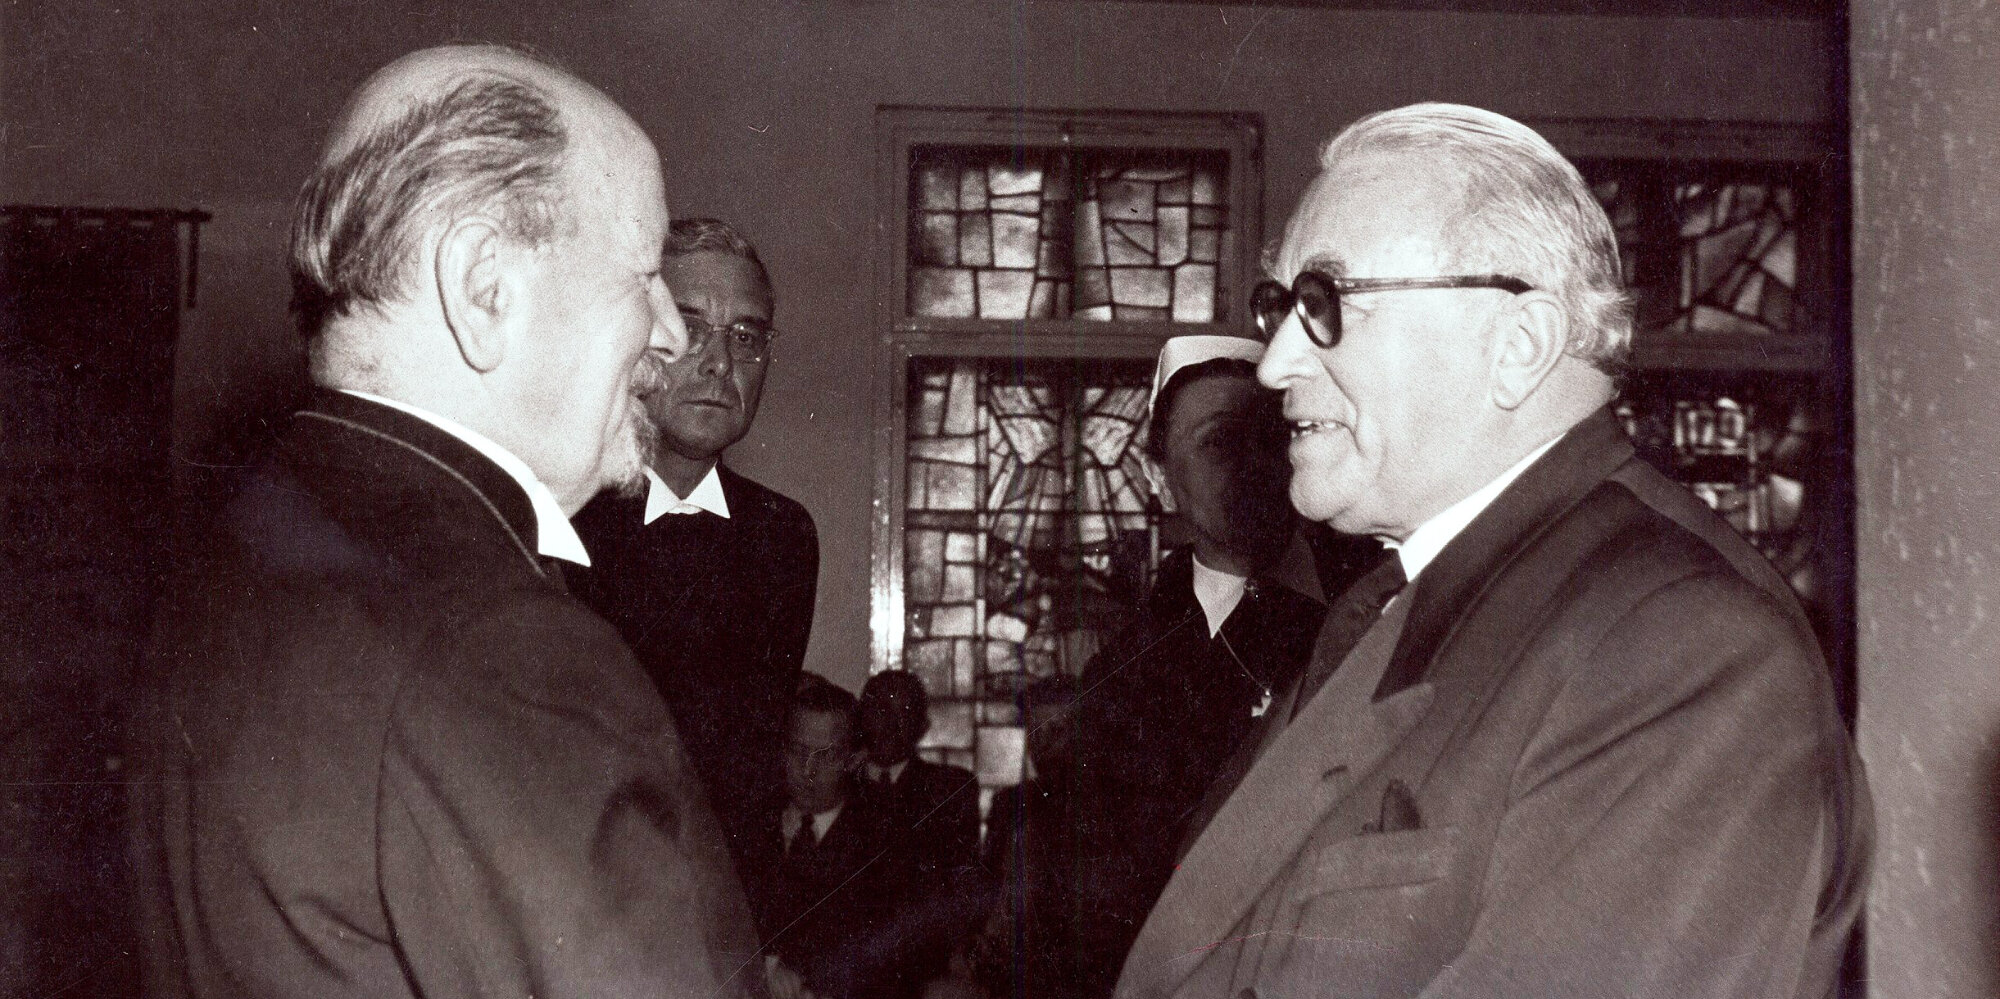 Schwar-weiß Aufnahme von zwei Männern. Rechts im Bild Ernst Kopp zusammen mit Otto Dibelius links im Bild.